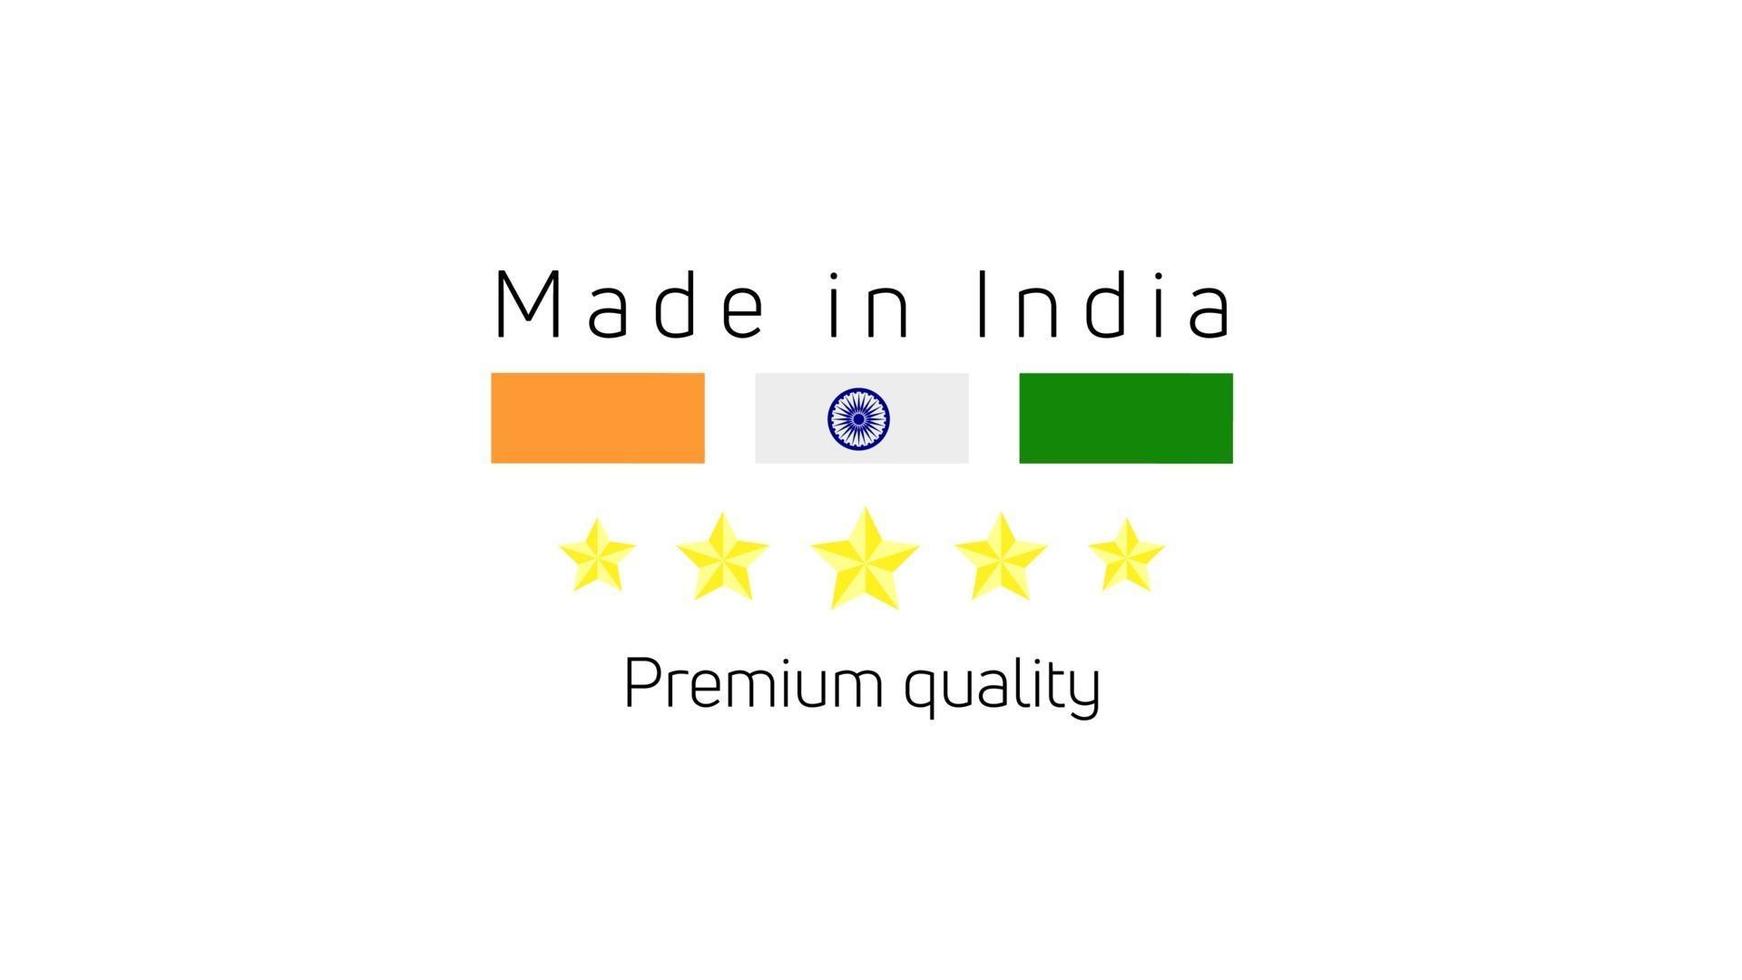 etichette made in india, emblema del prodotto india, logo made in india. illustrazione vettoriale